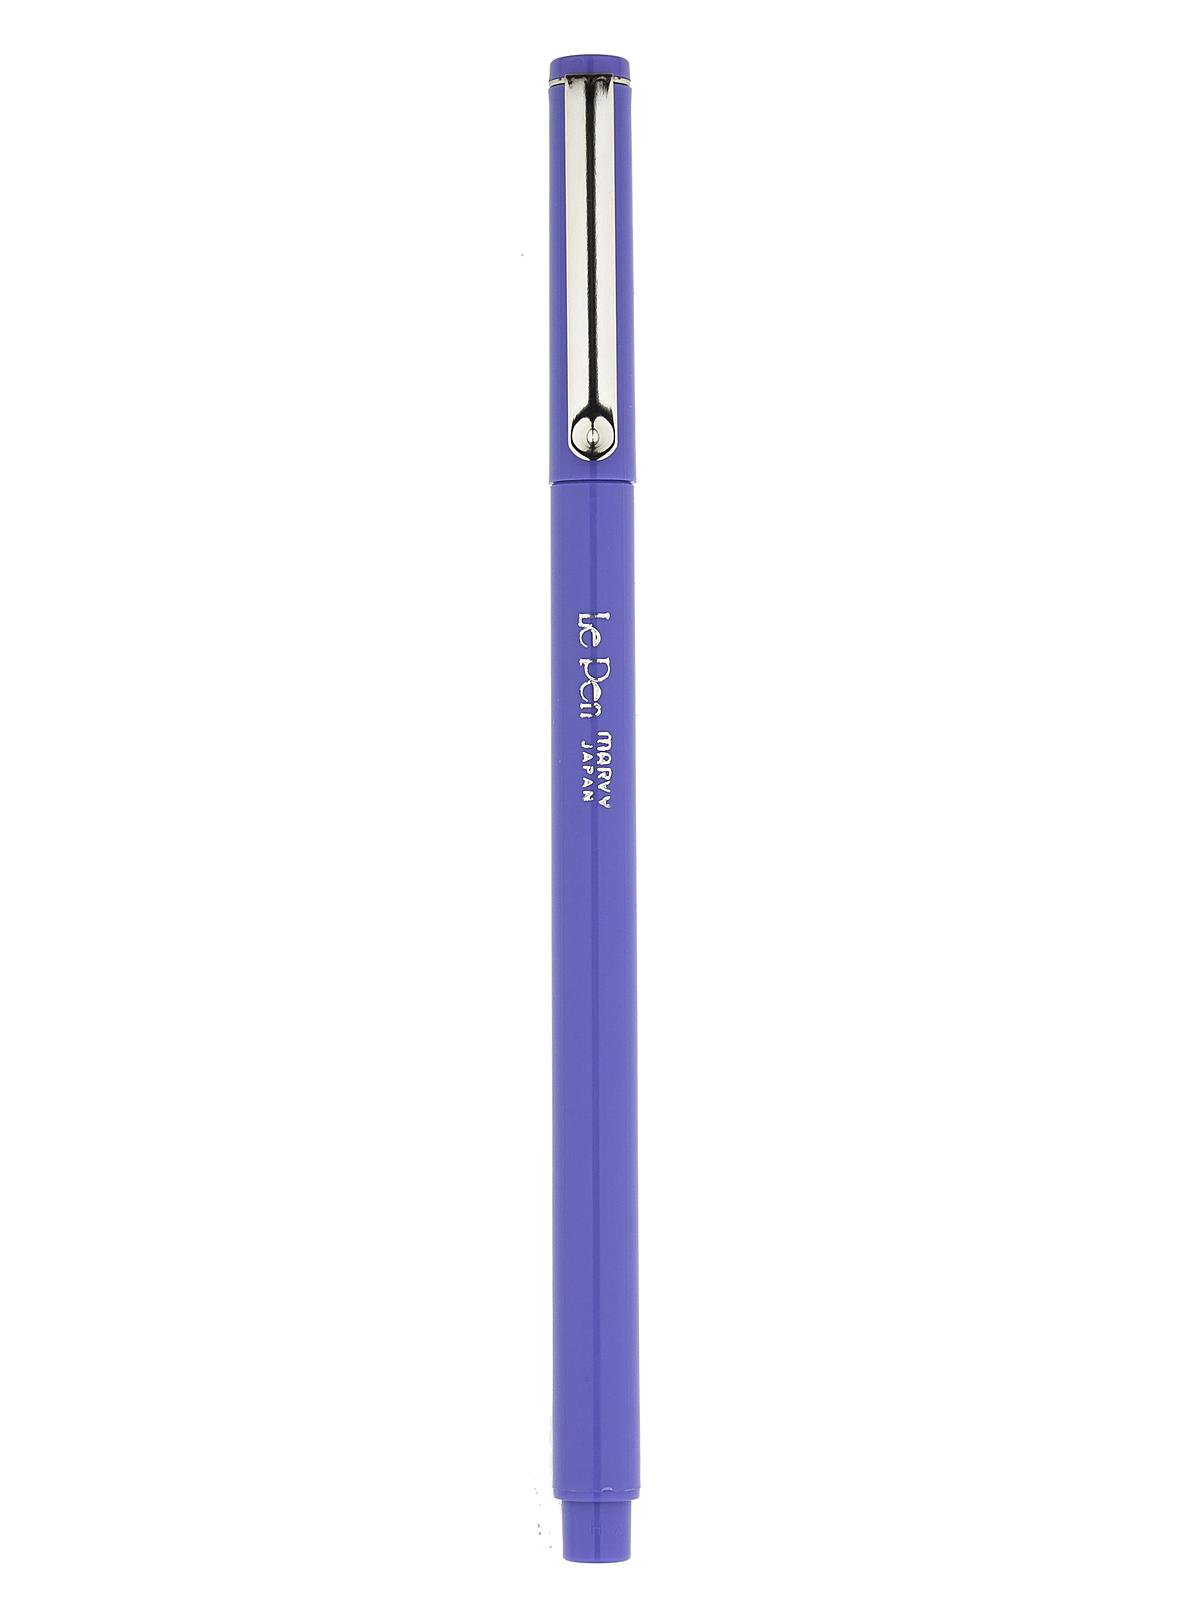 Uchida Le Pens Multicolor Set - 36 Colors Complete Set - Le Pen Pens for  Journaling - Smudge Proof Fine Pens for Writing, Drawing - 0.3 Fine Line  Lepen Pen Set - Yahoo Shopping